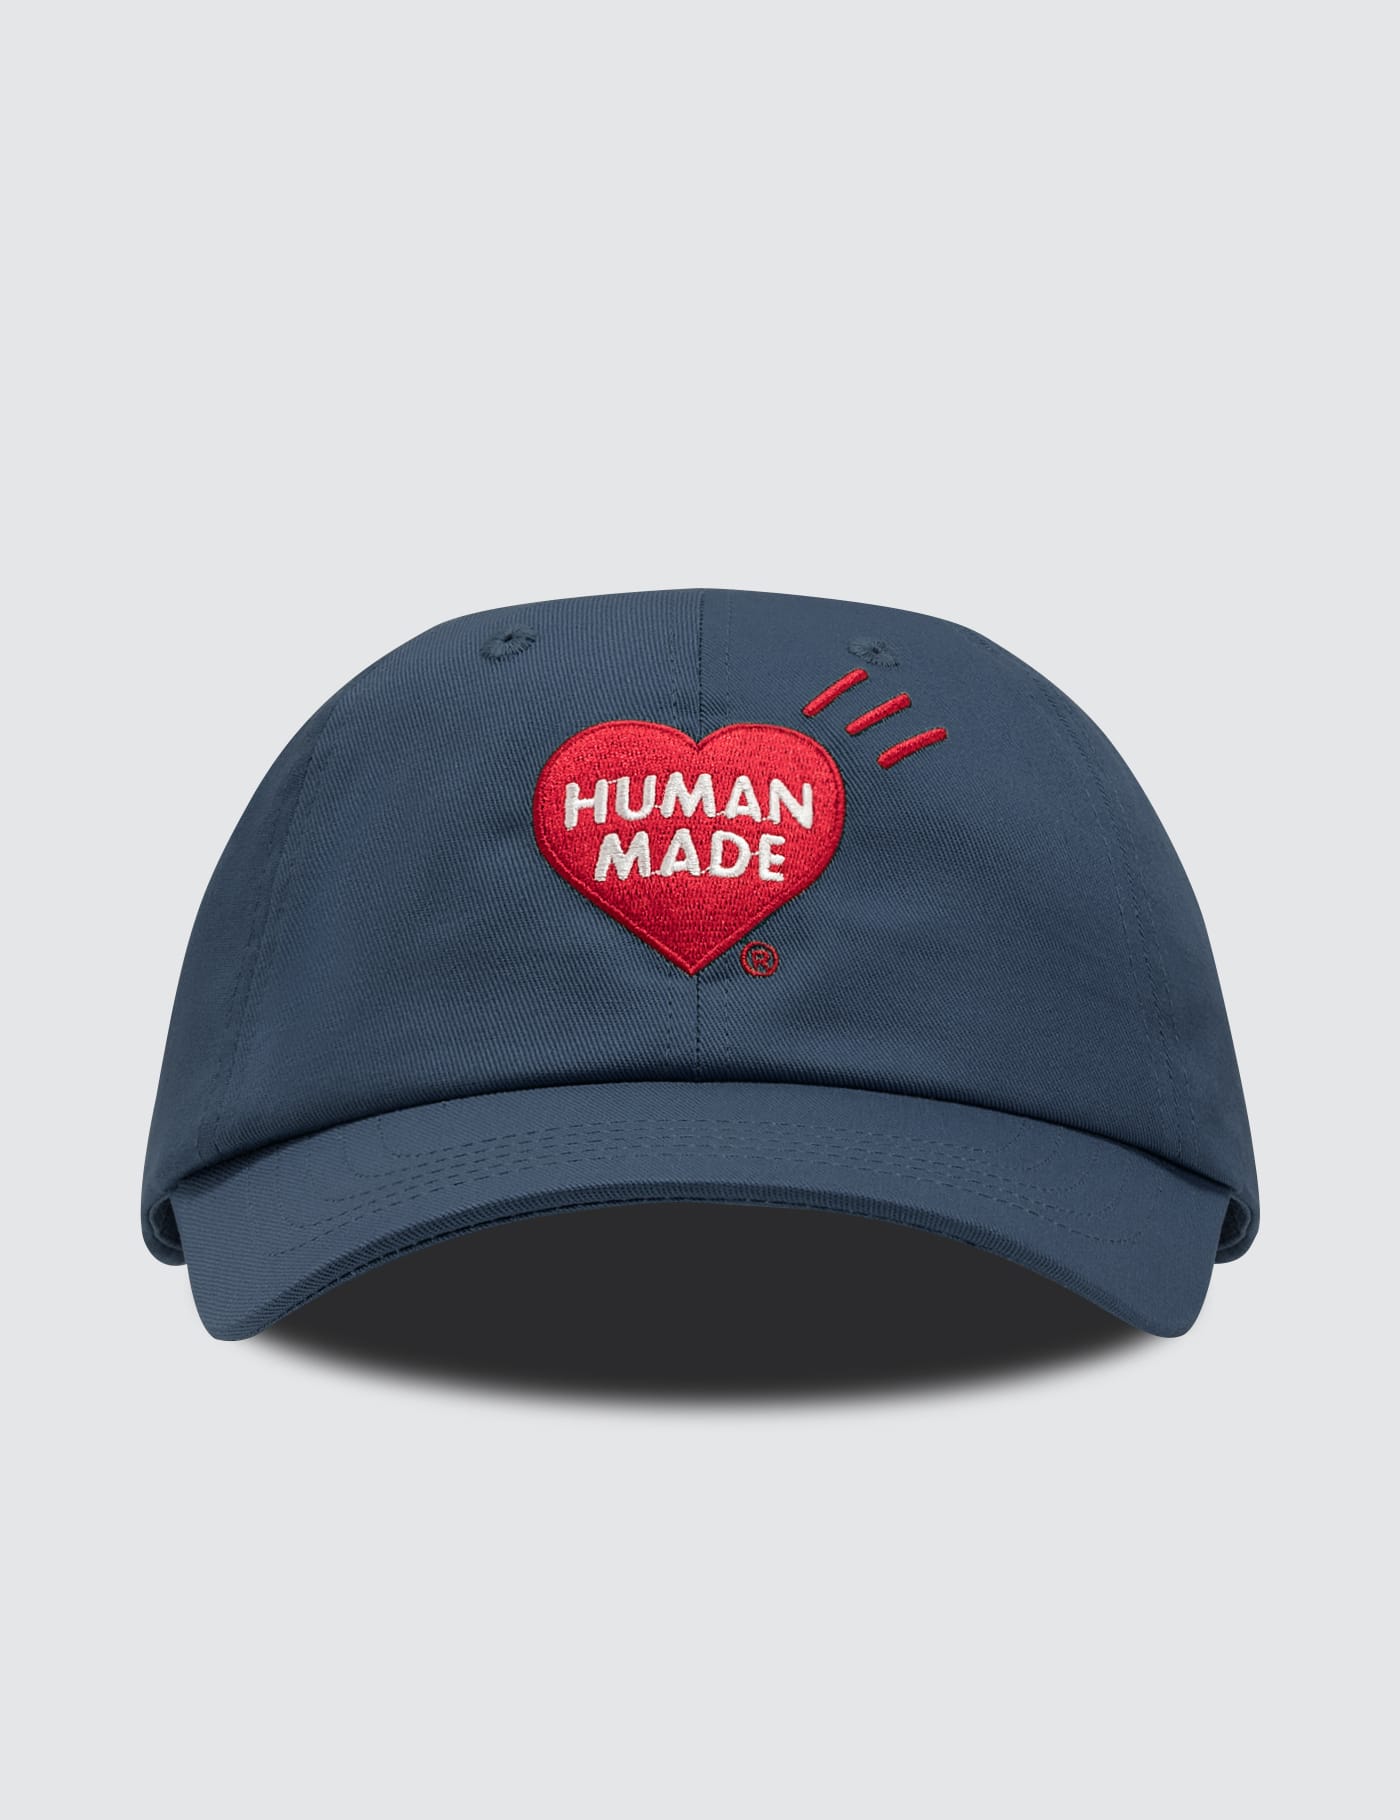 human made cap